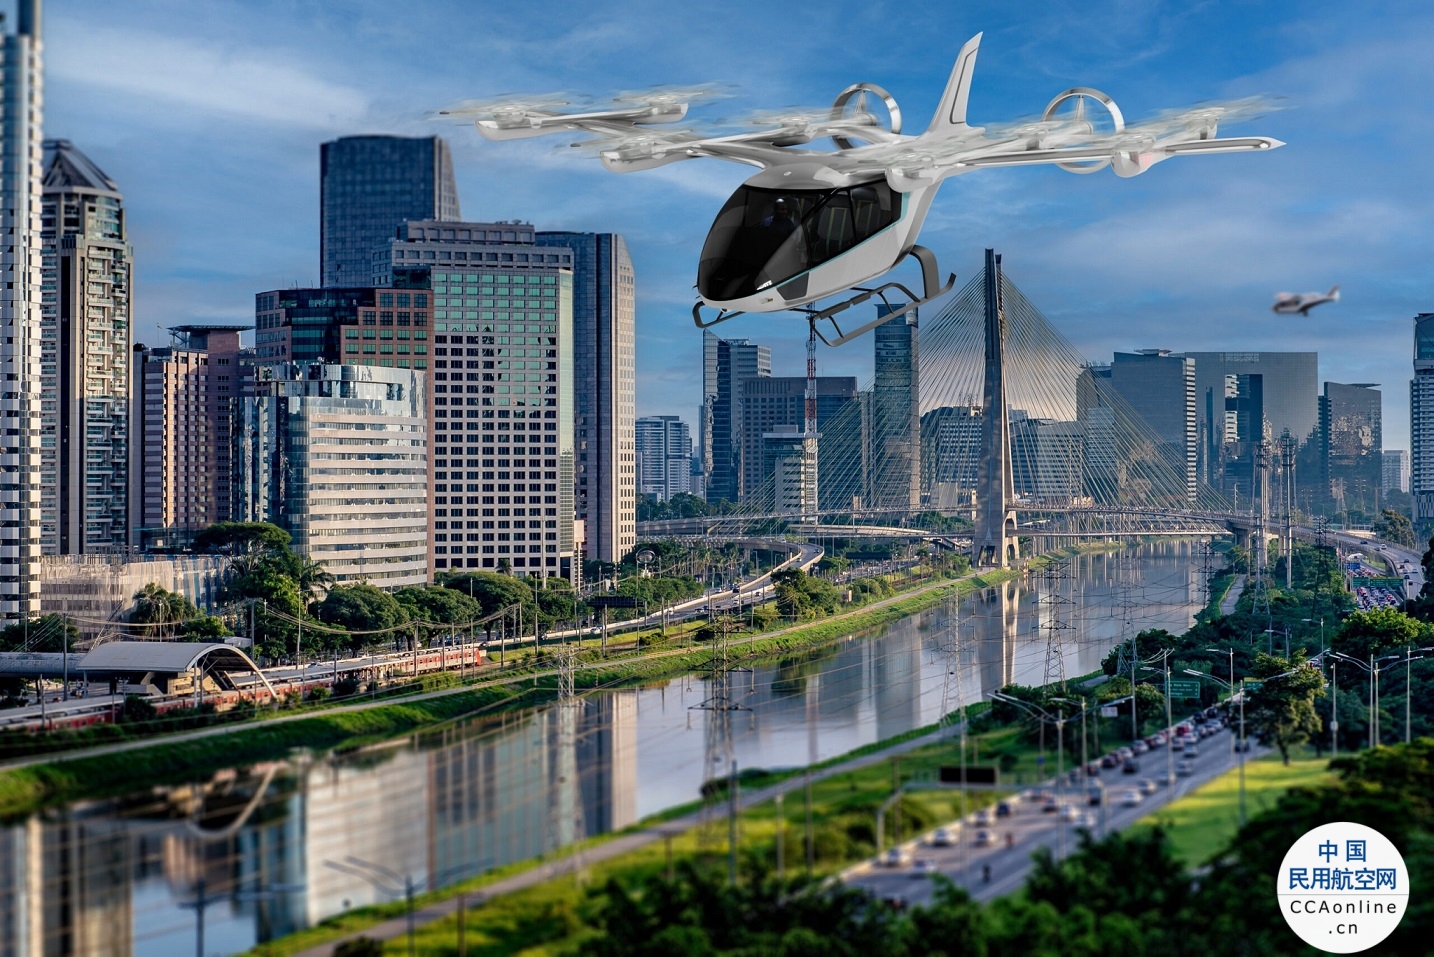 Eve顺利完成城市空中交通管理系统原型的开发